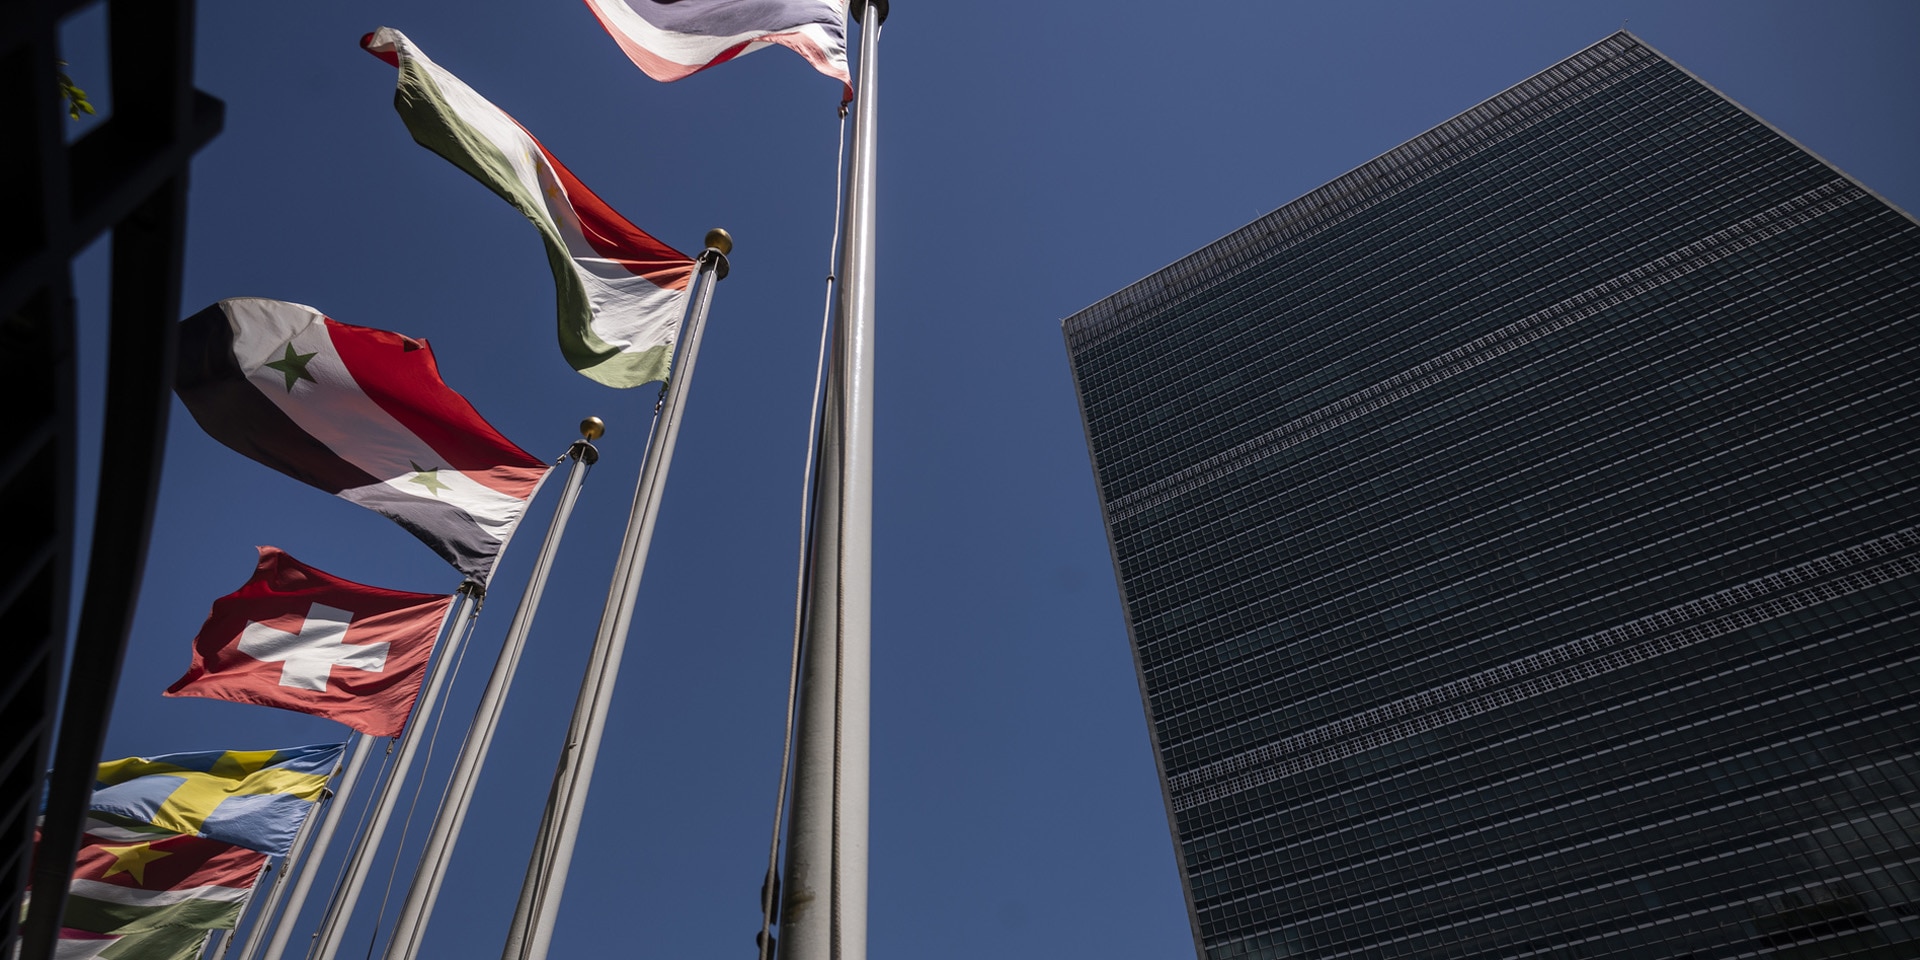 La bandiera della Svizzera sventola accanto a quelle degli altri Stati membri dell’ONU davanti alla sede dell’Organizzazione a New York.